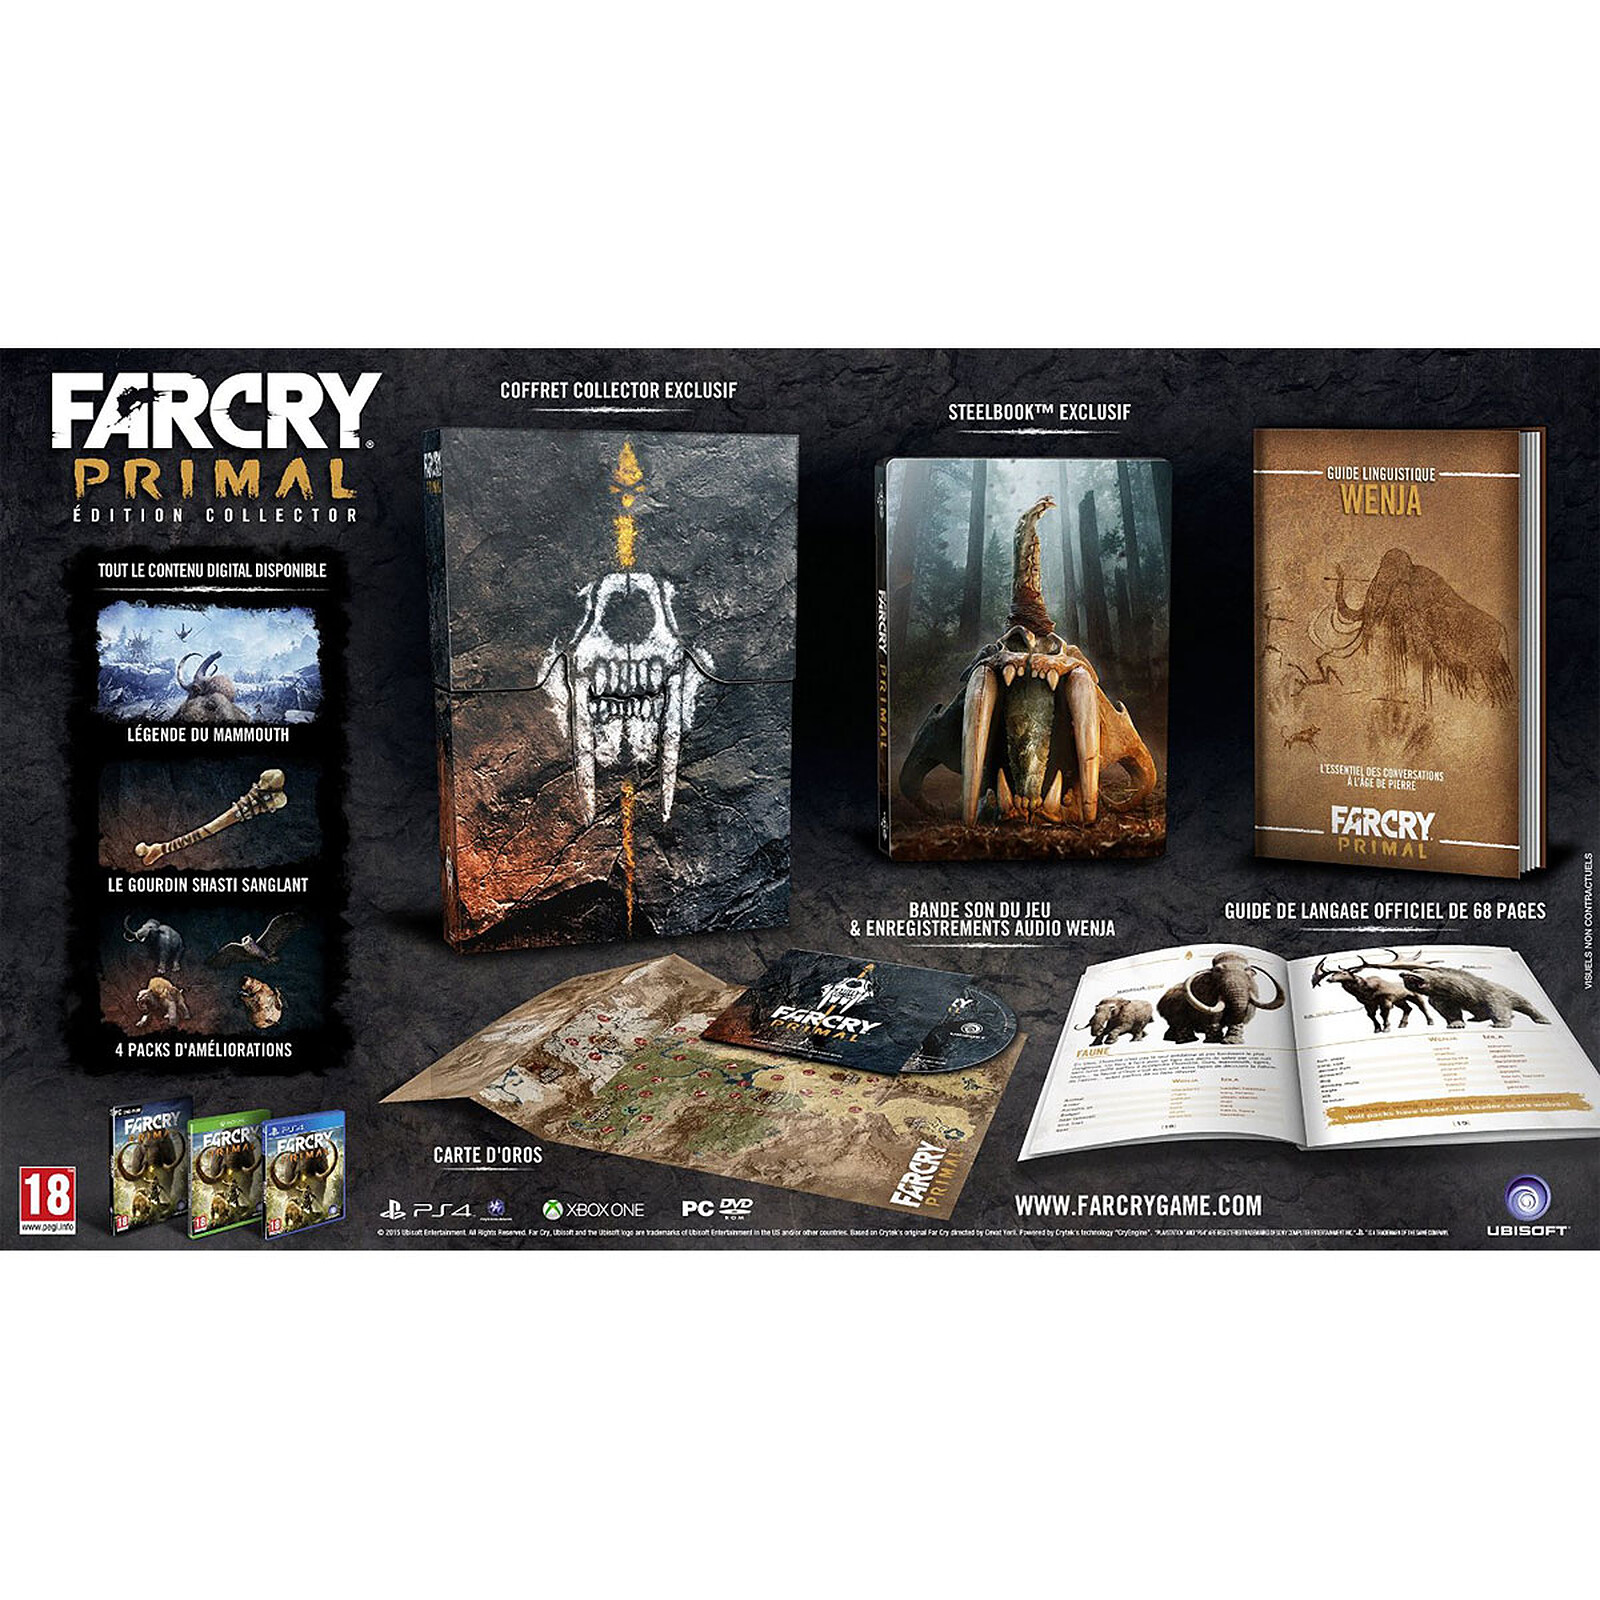 Far cry primal купить. Far Cry Primal коллекционное издание. Коллекционка по far Cry ps4. Far Cry 2 коллекционное издание. Коллекционное издание far Cry 4.